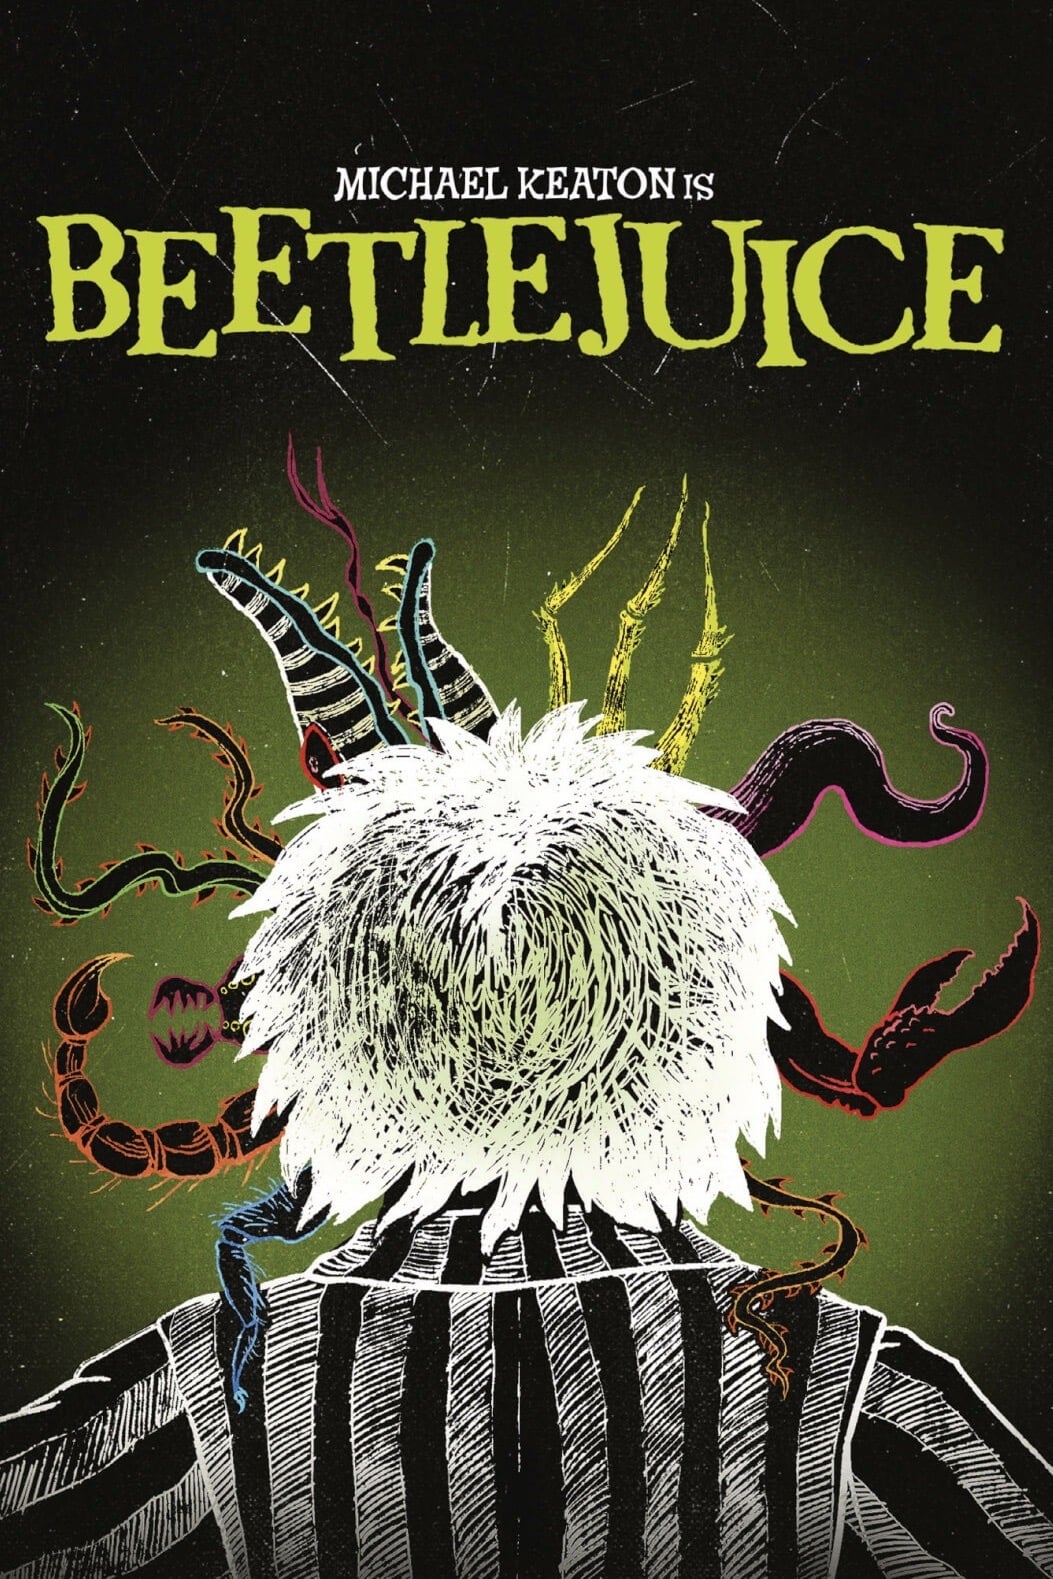 Beetlejuice